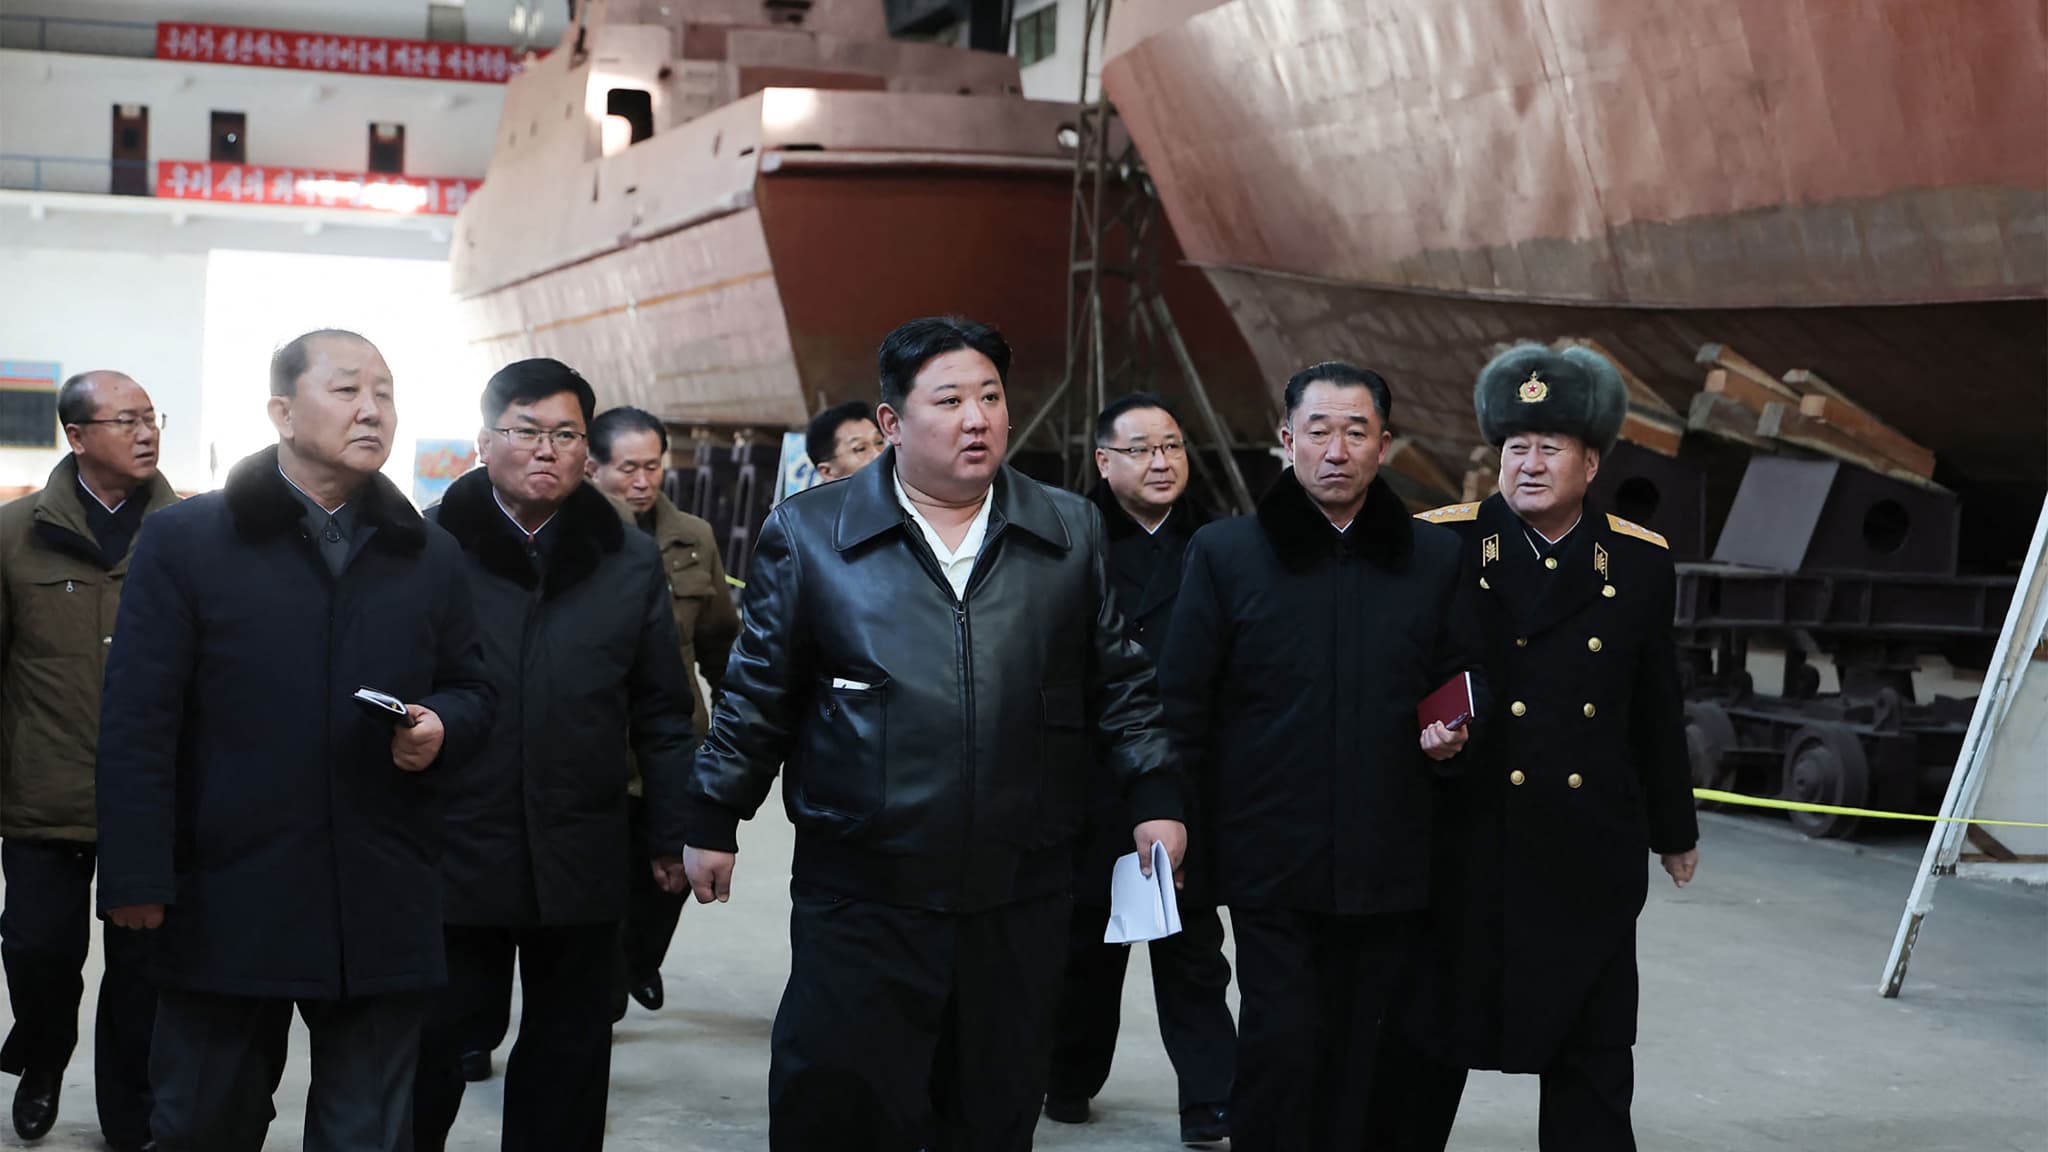 Kim Jong-un affirme que la Corée du Nord veut devenir la force